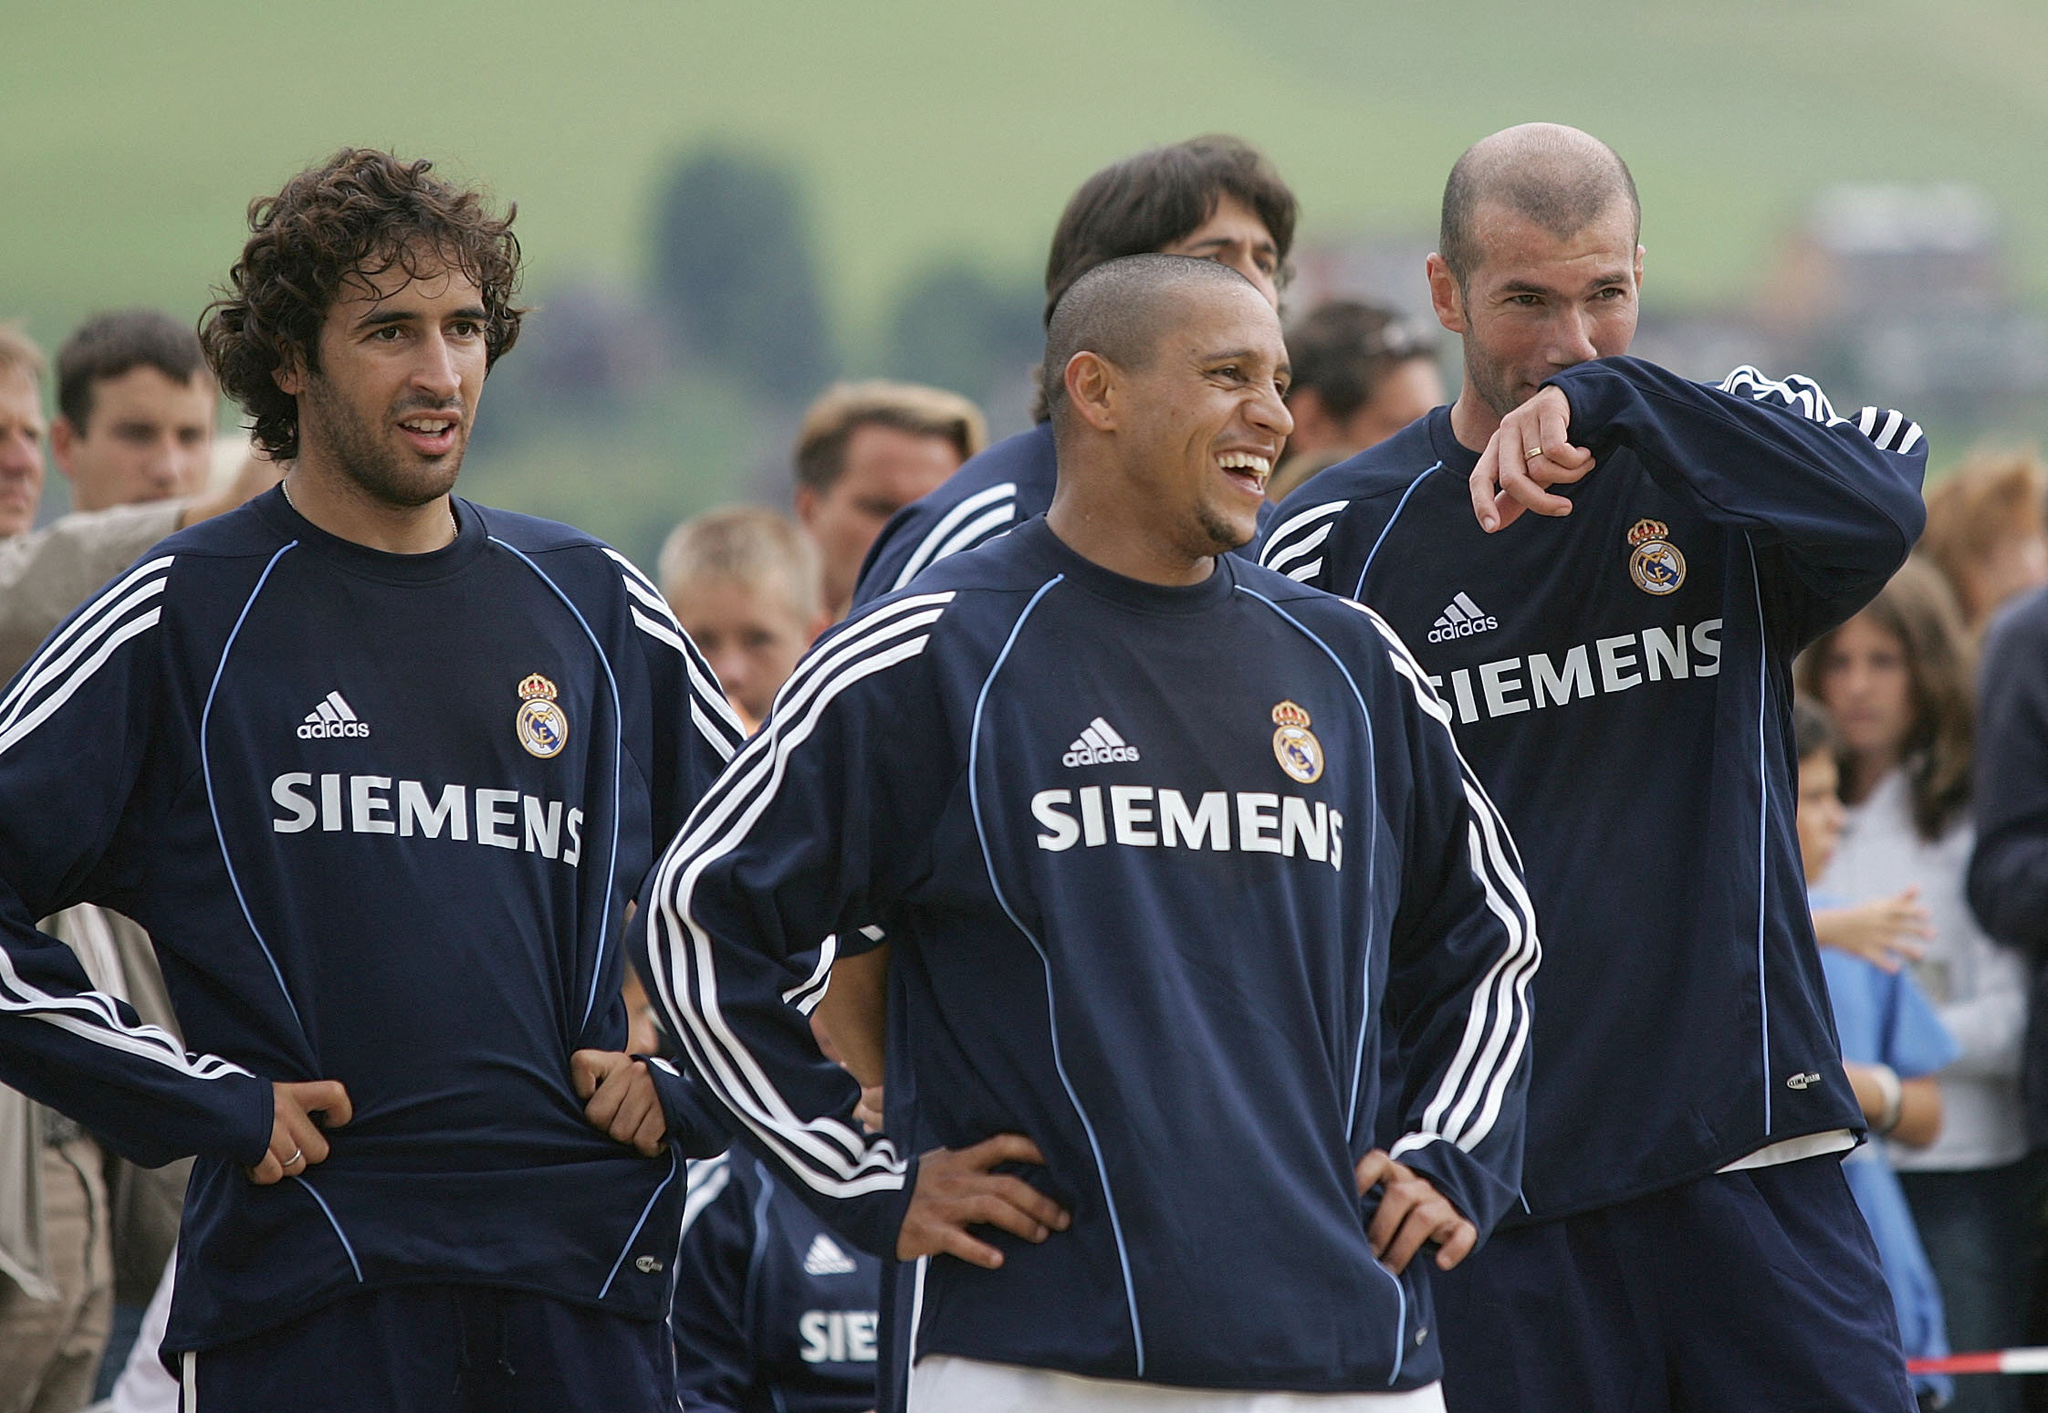 Fostul jucător legendar al lui Real Madrid este dorit în Germania! Cu ce echipă e în tratative